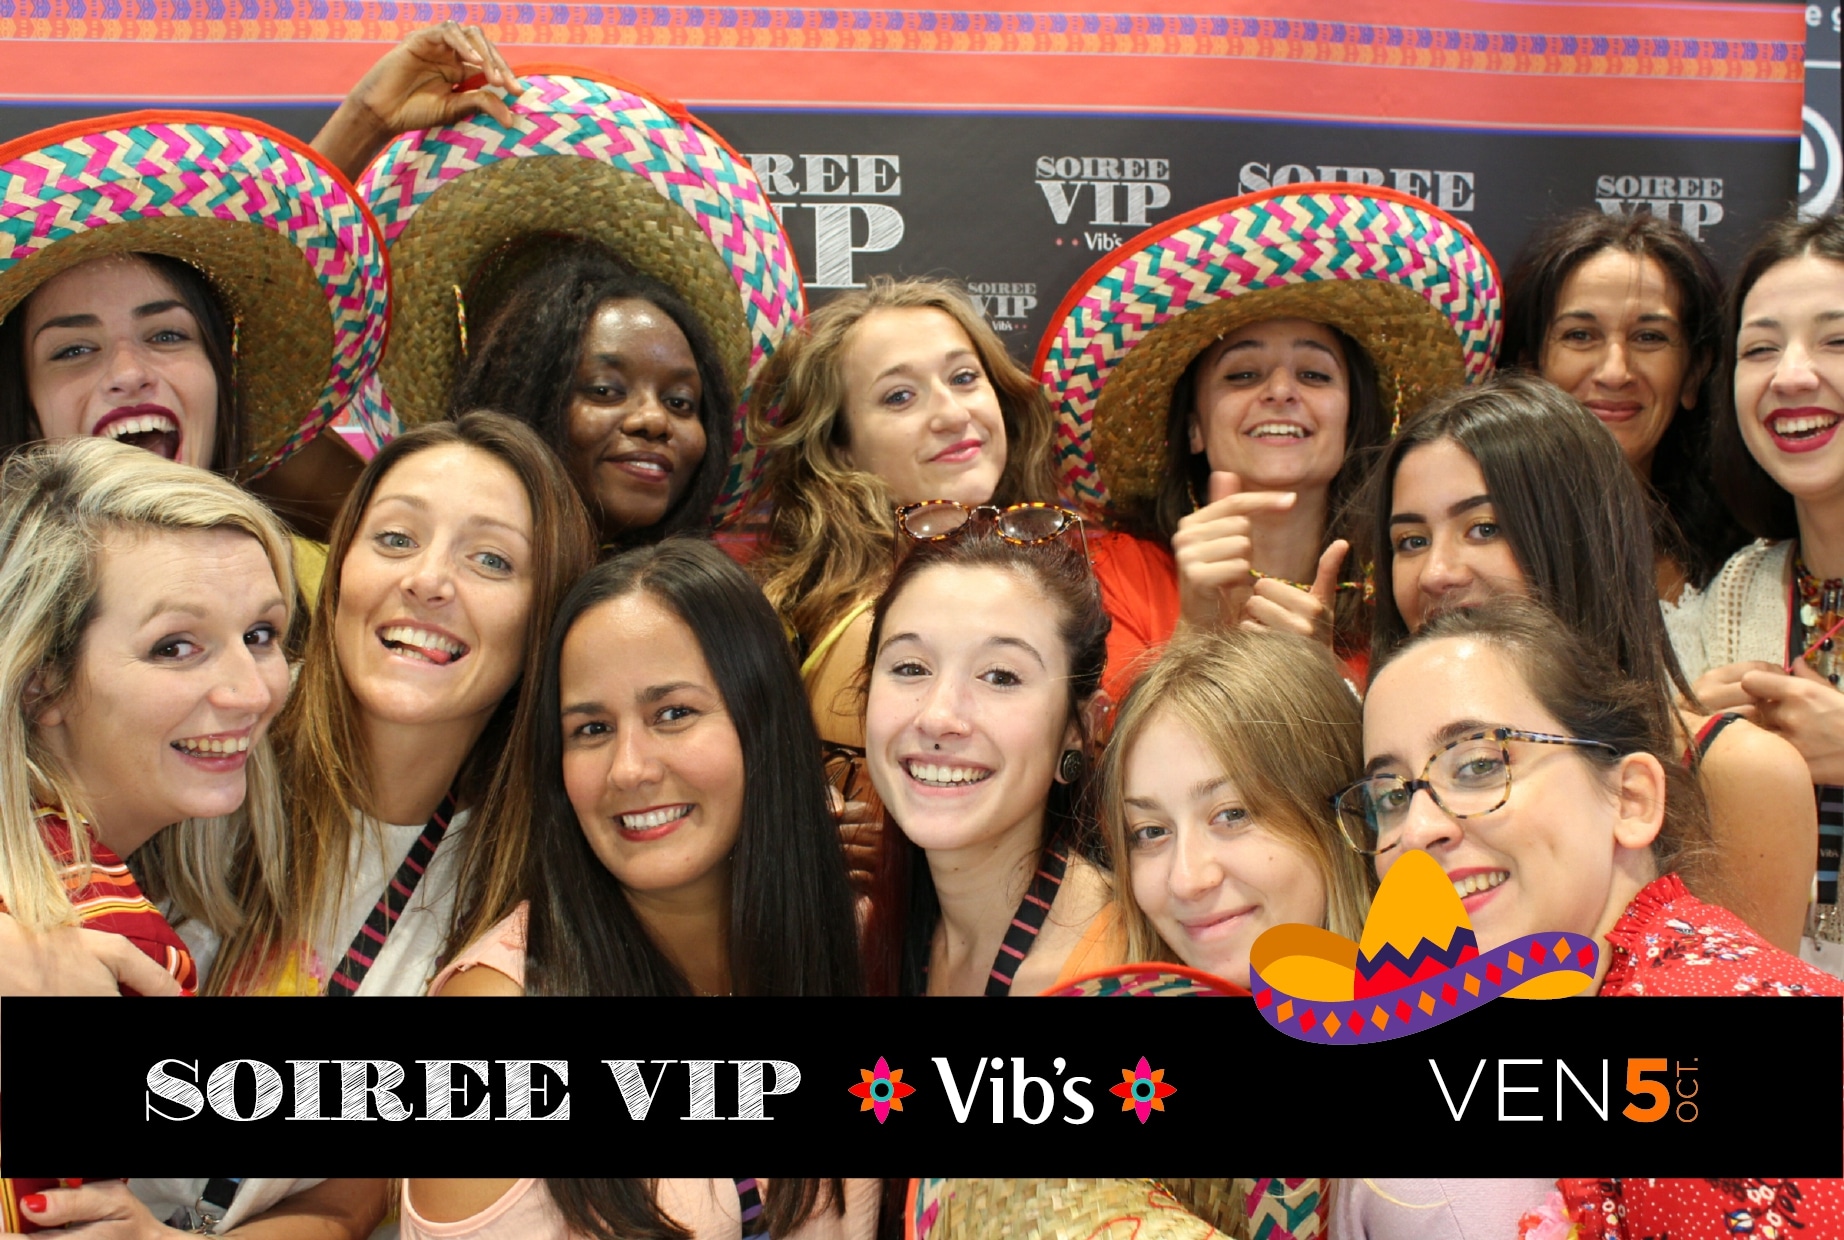 Photo personnalisée magasin Vib's Nantes avec animation borne selfie et photocall à soirée VIP octobre 2018